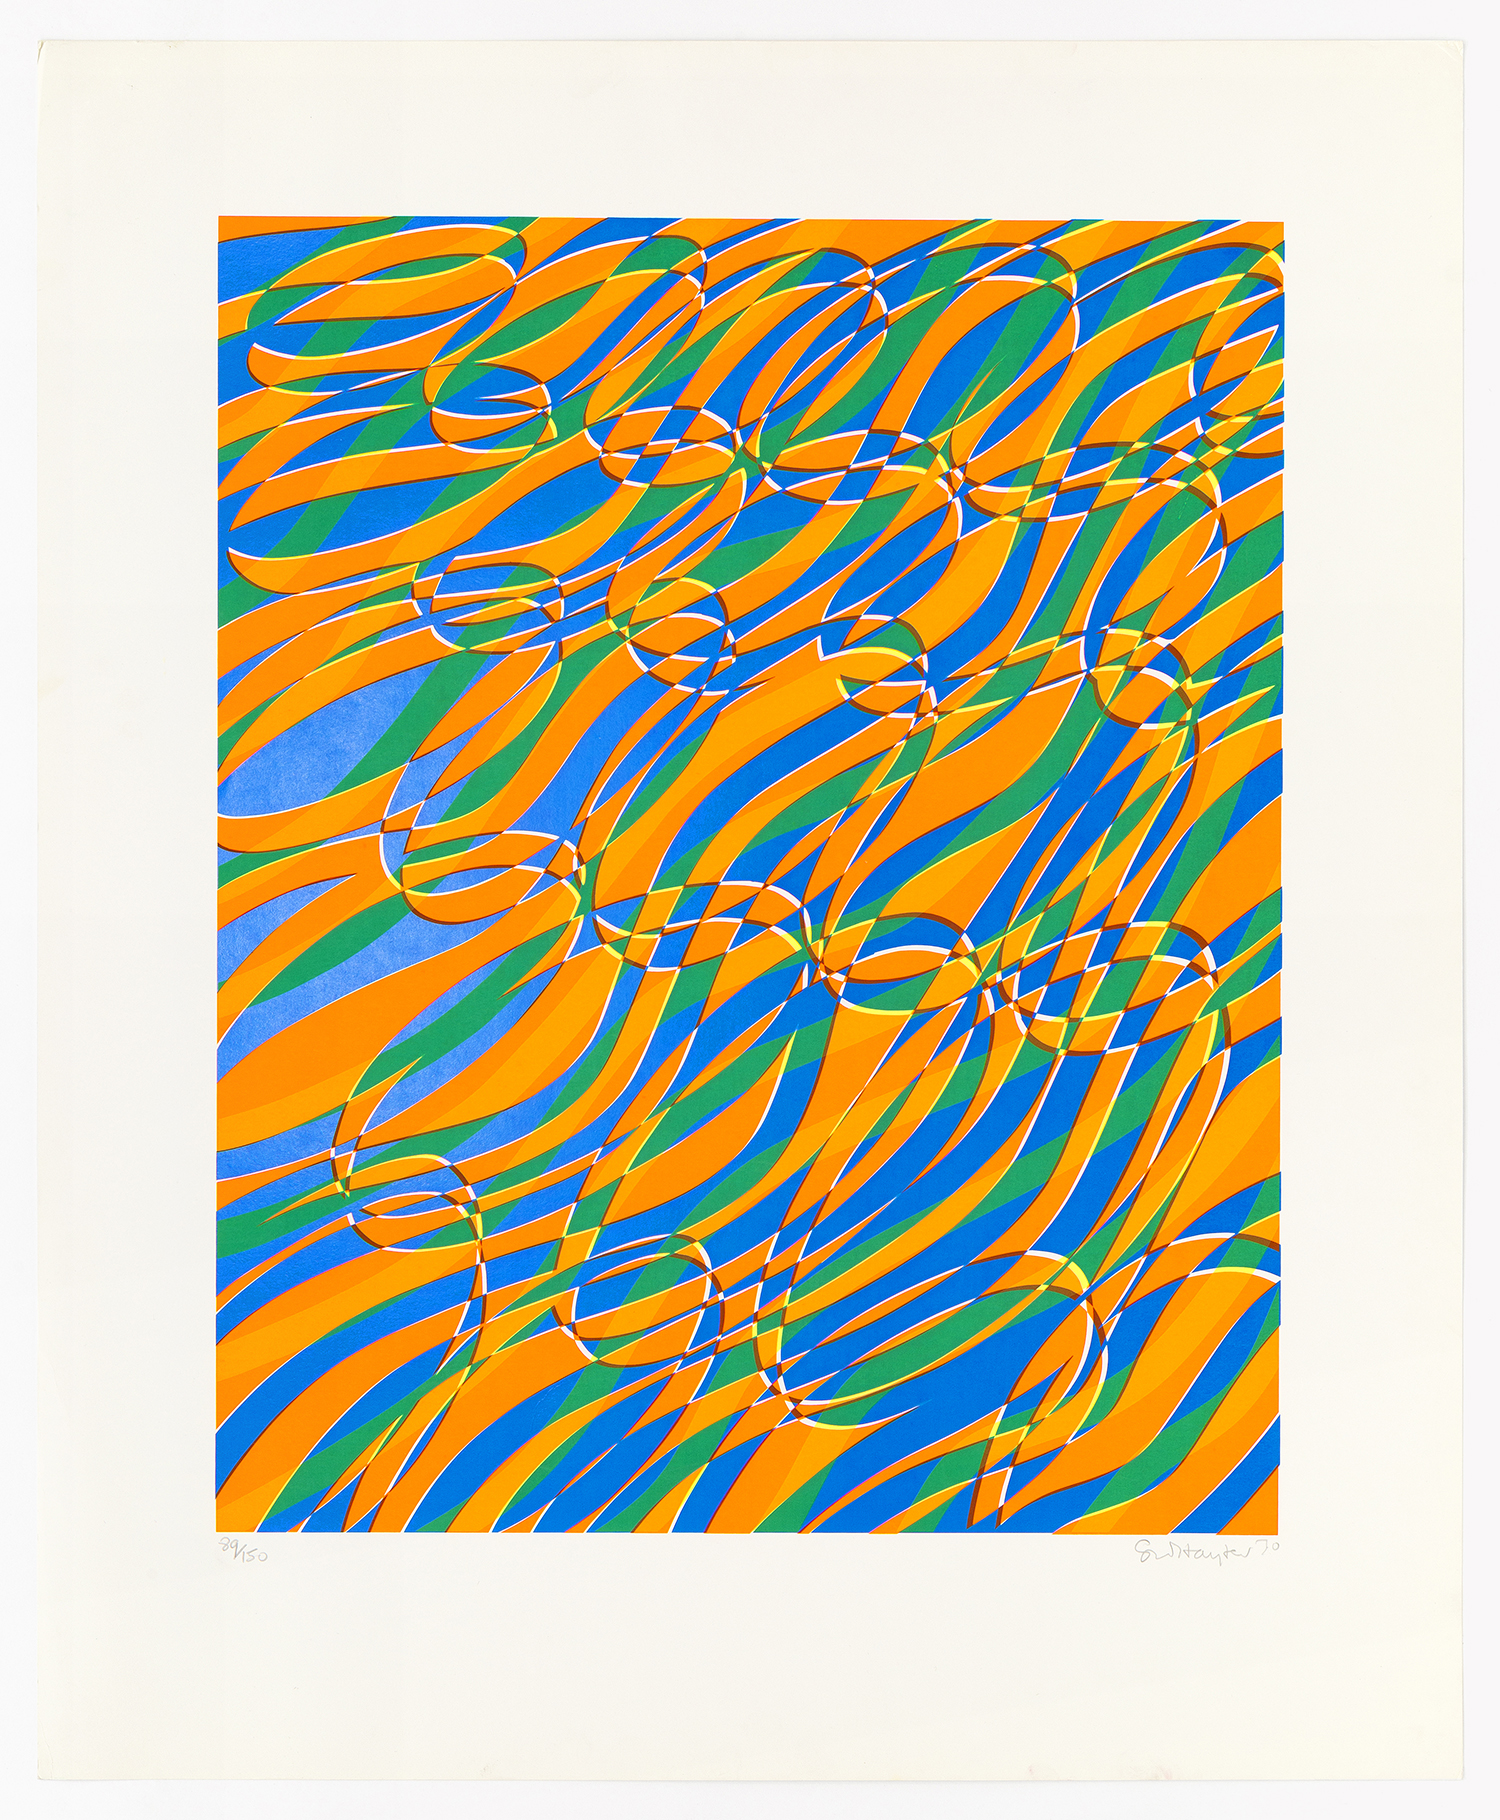 Aquaria Series B, 1970, Silkscreen 23 x 28 inches (58.4 x 71.1 cm) Edition of 150